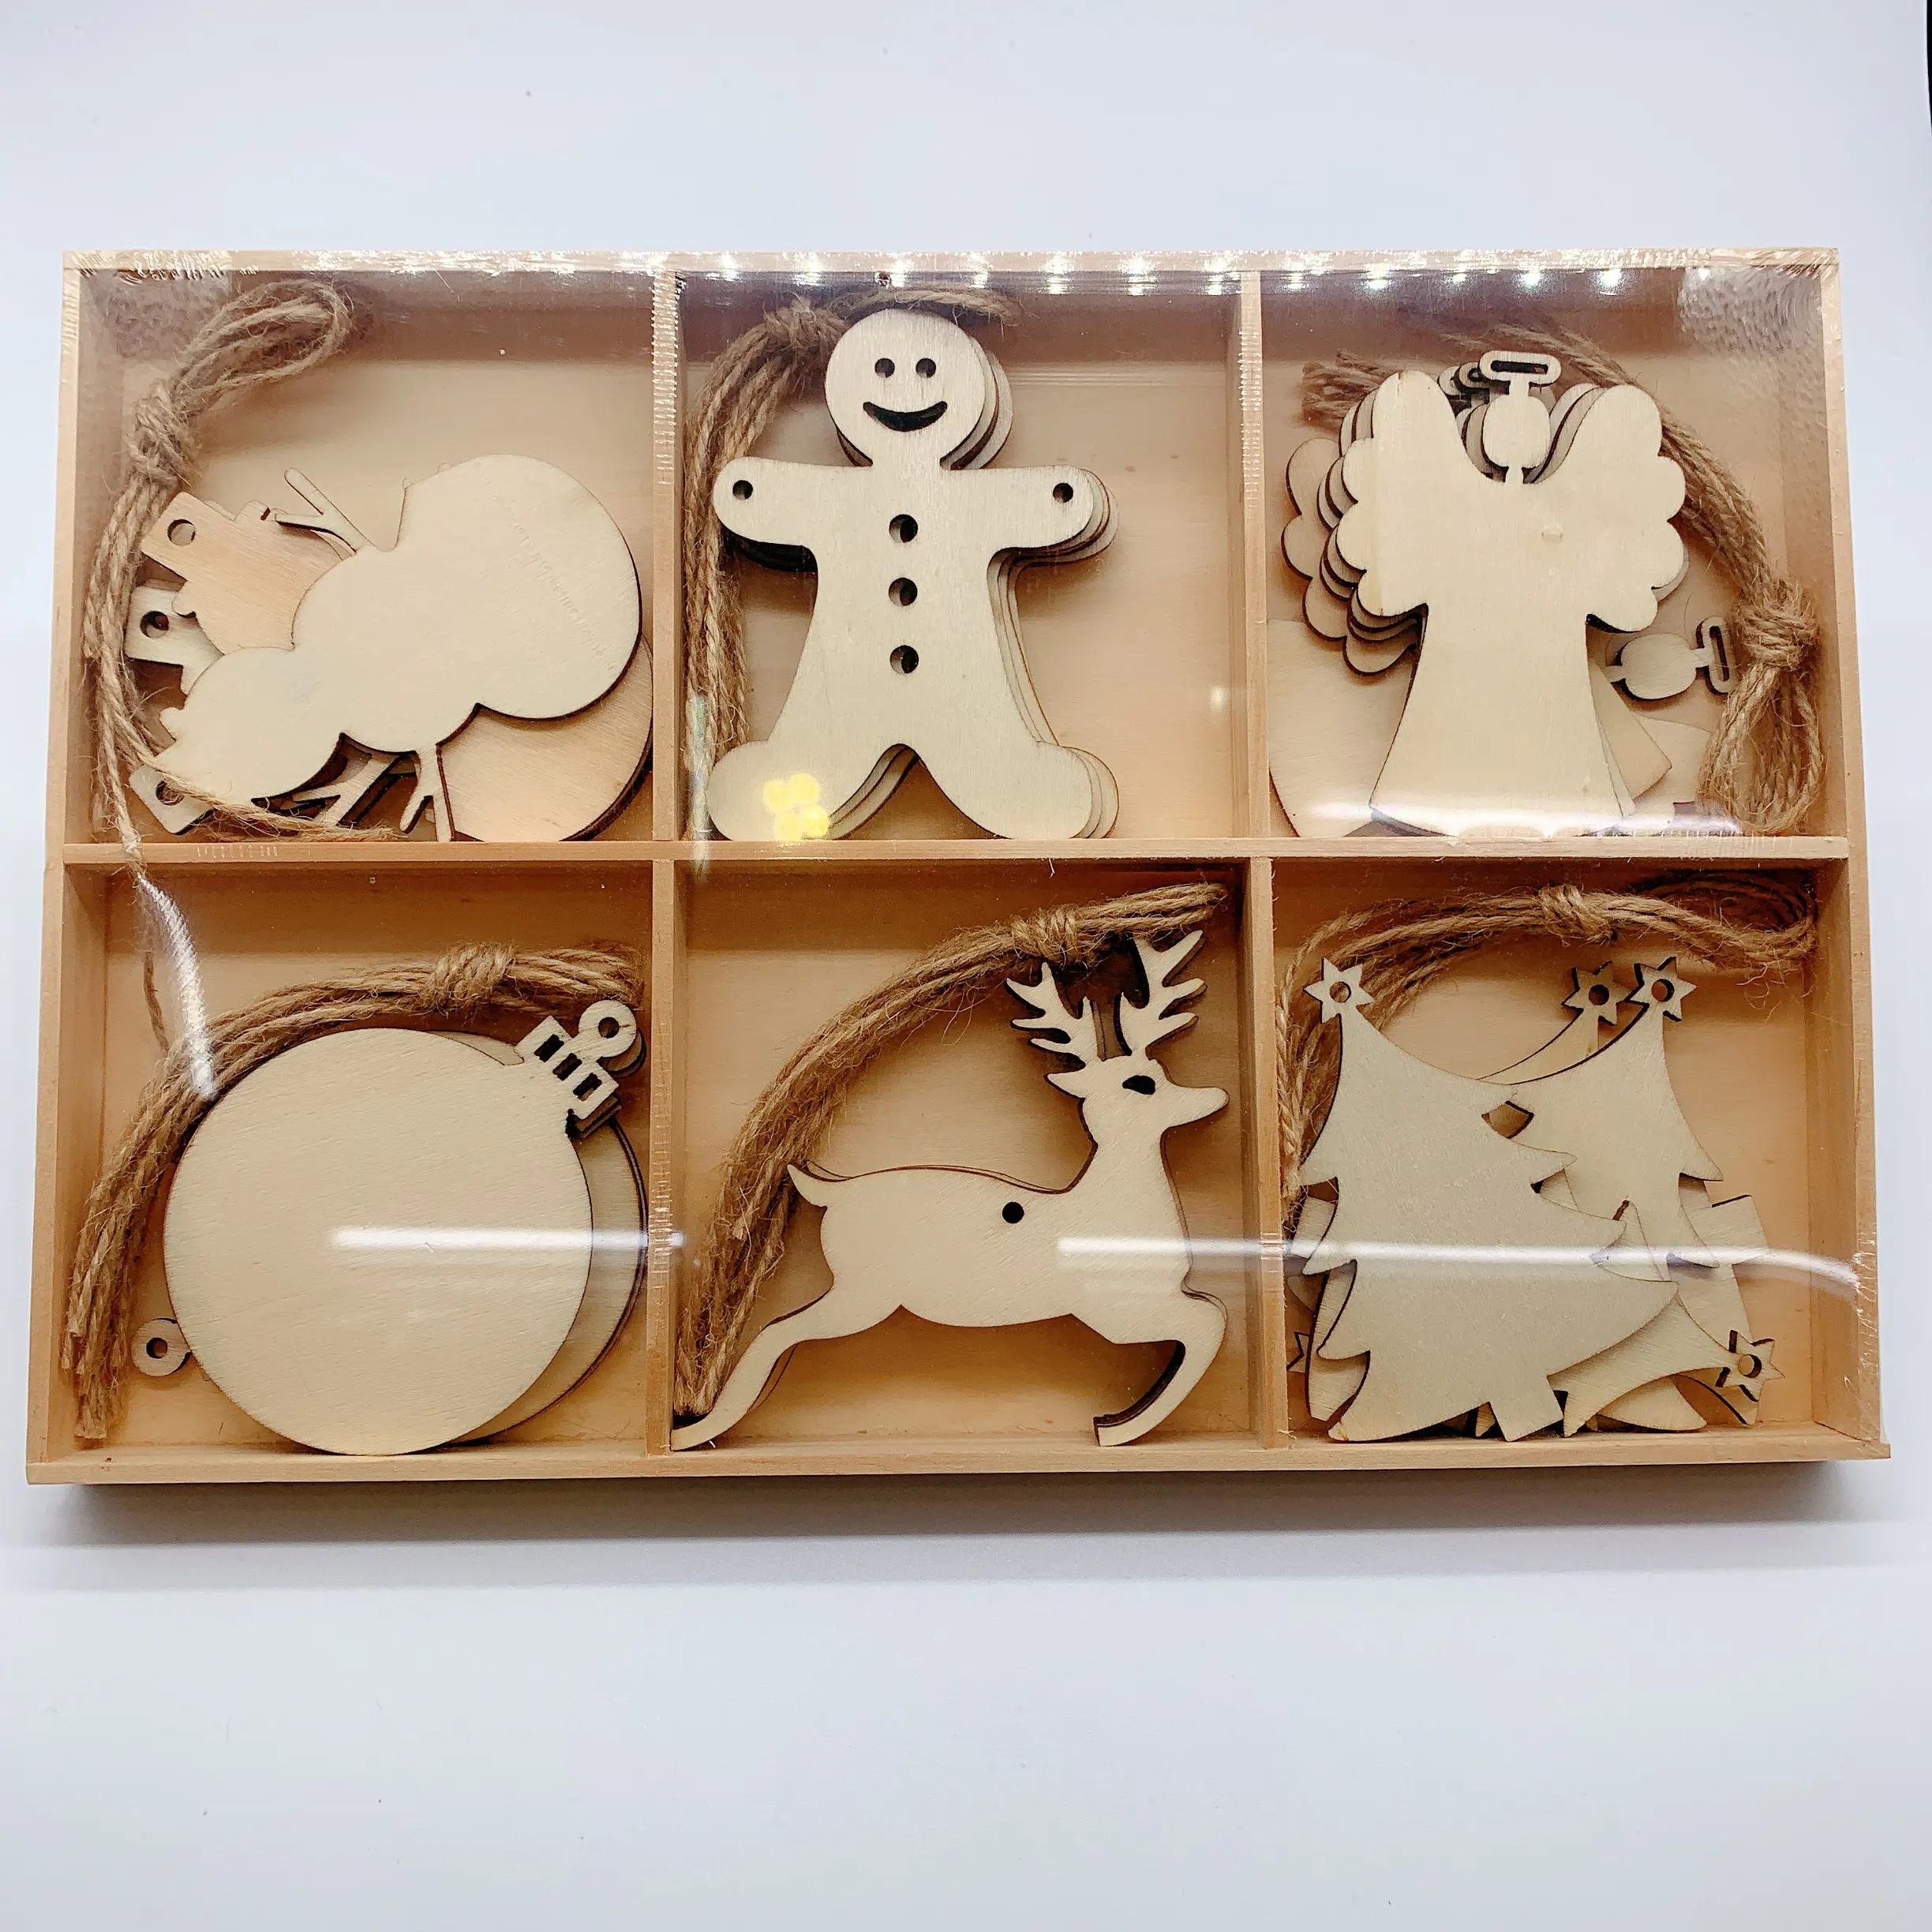 قطع خشبية لأعياد الميلاد, قطع خشبية خشبية معلقة على شكل حرف v ، ديكور منزلي ، نقش فني شعبي منحوت في أوروبا